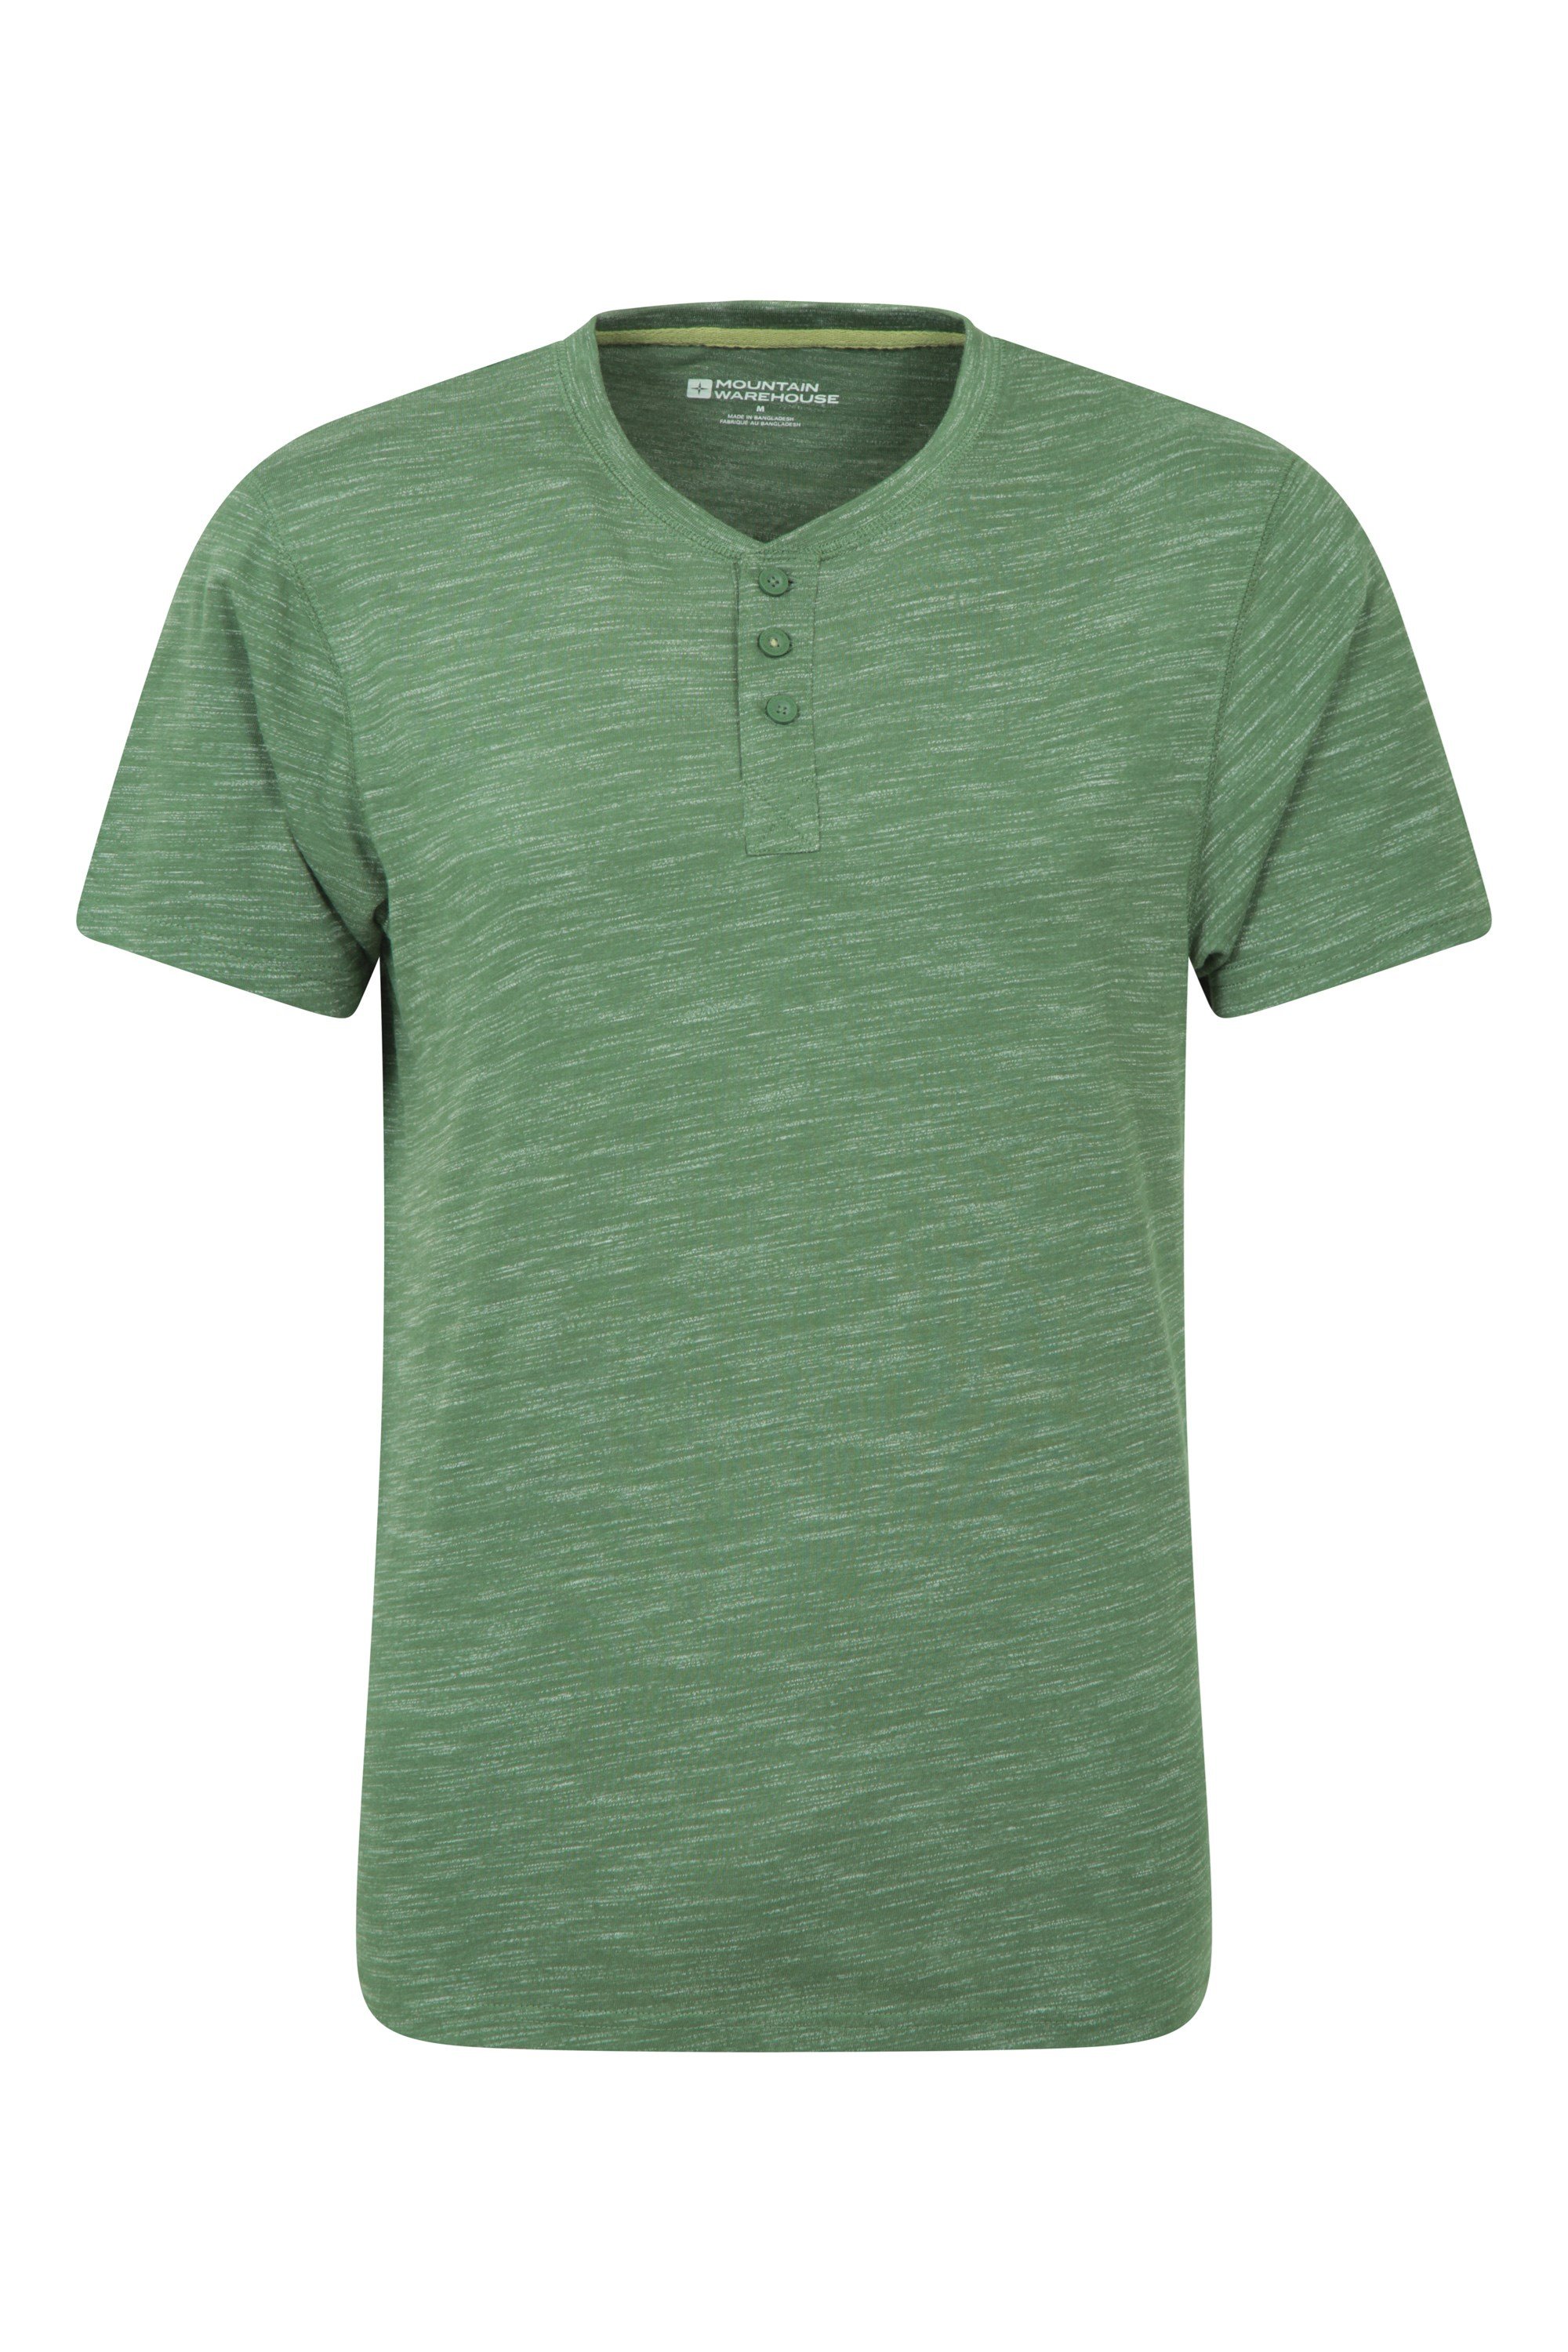 Hasst Henley Mens T-shirt - Green